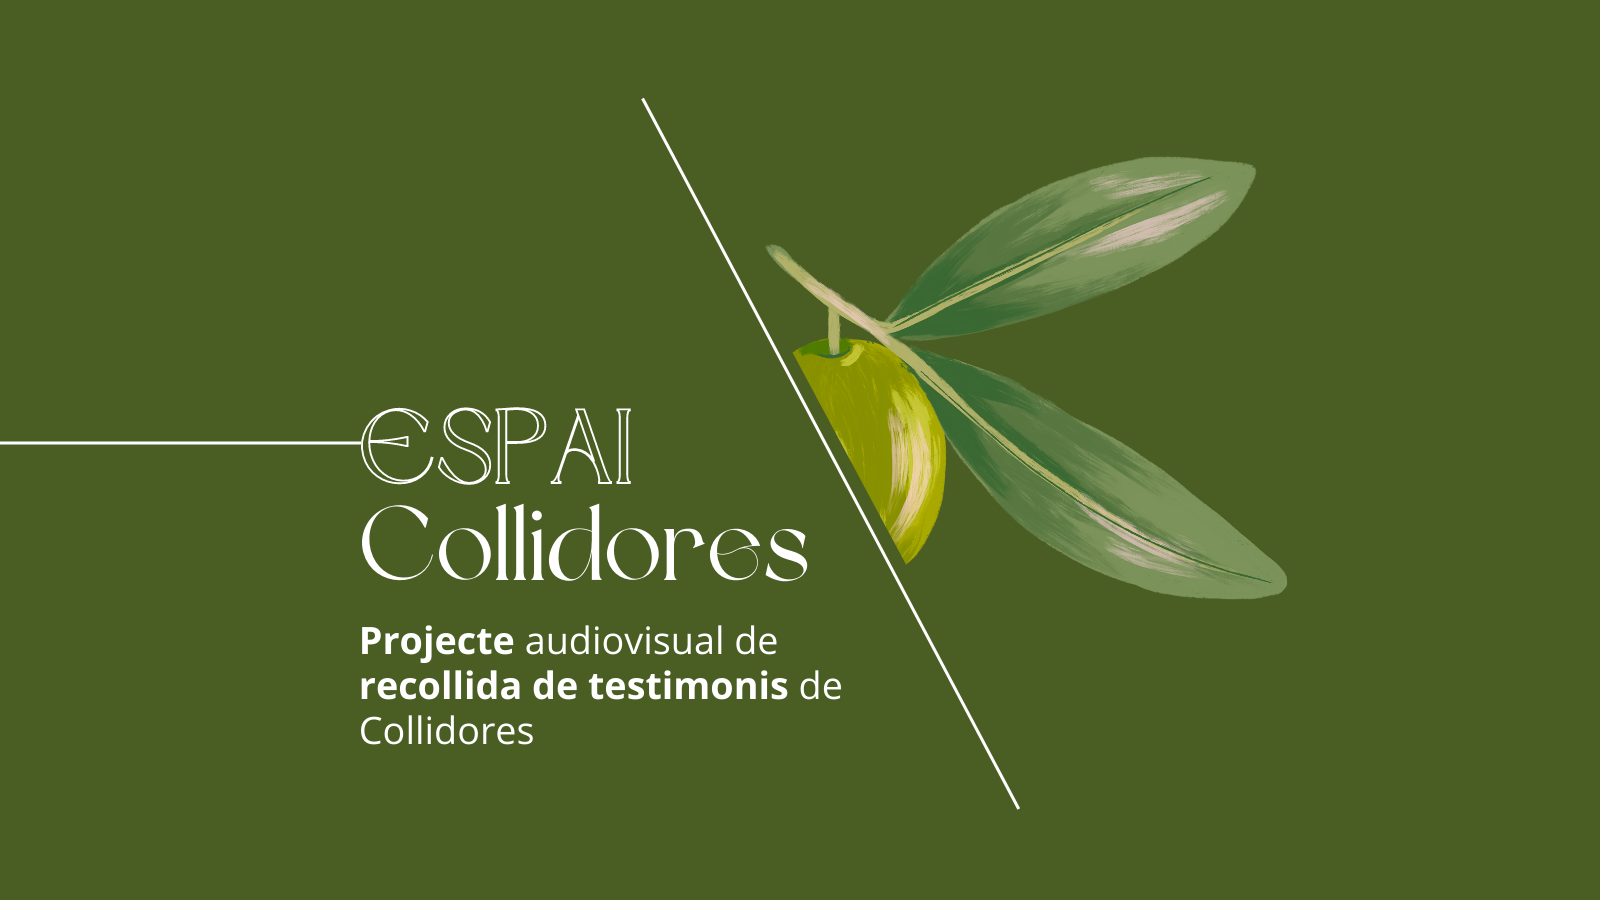 Besuche das neue 'Espai Collidores' im Centre Serra de Tramuntana